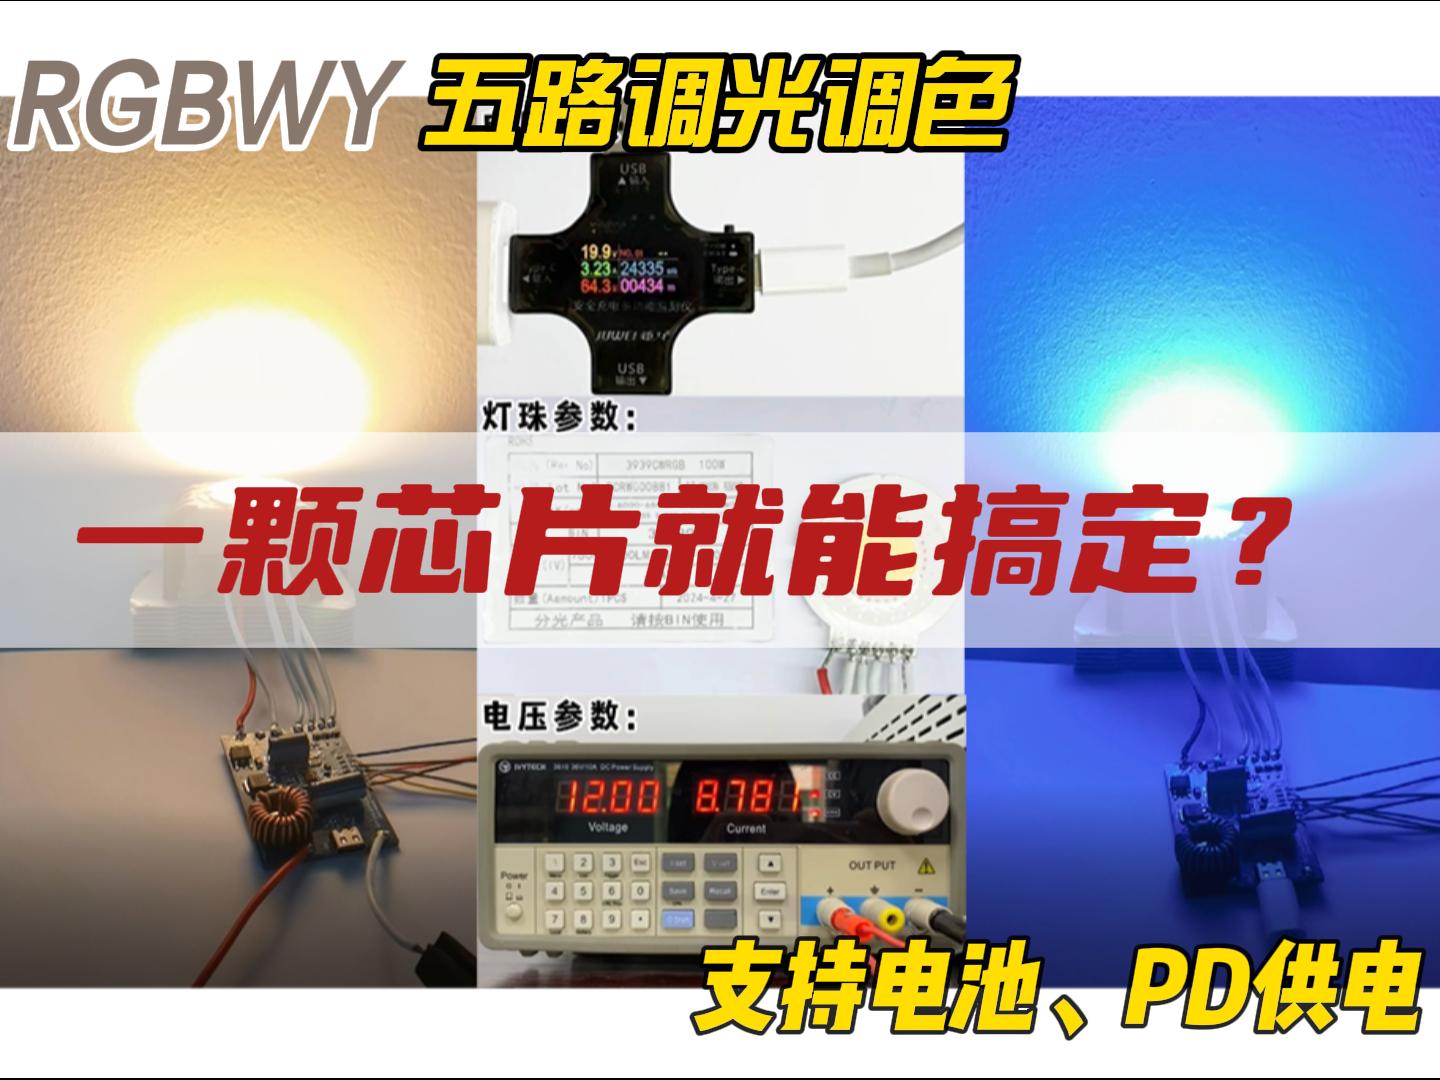  #電子技術 #電路知識 #pcb設計 #人工智能 #led燈 
FP7208升壓恒流無頻閃RGBWY五路調光